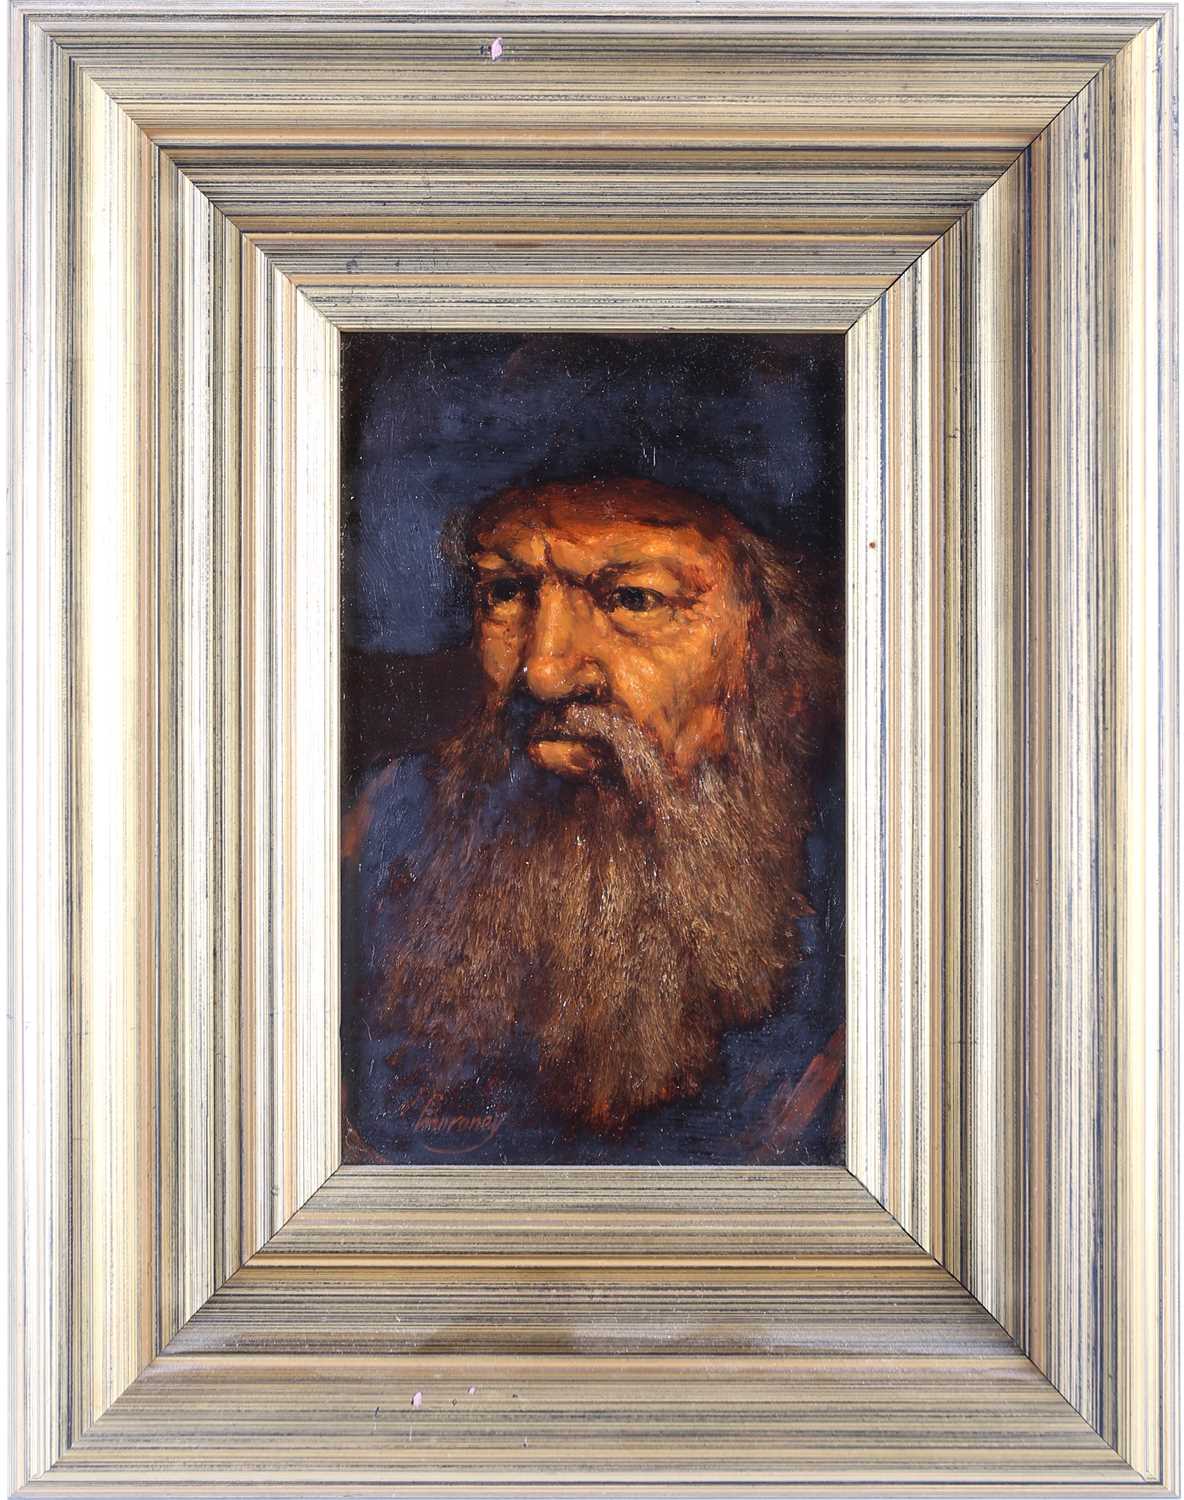 Ken Moroney (1949-2018) British, a portrait of an elderly bearded man, oil on board, signed to lower